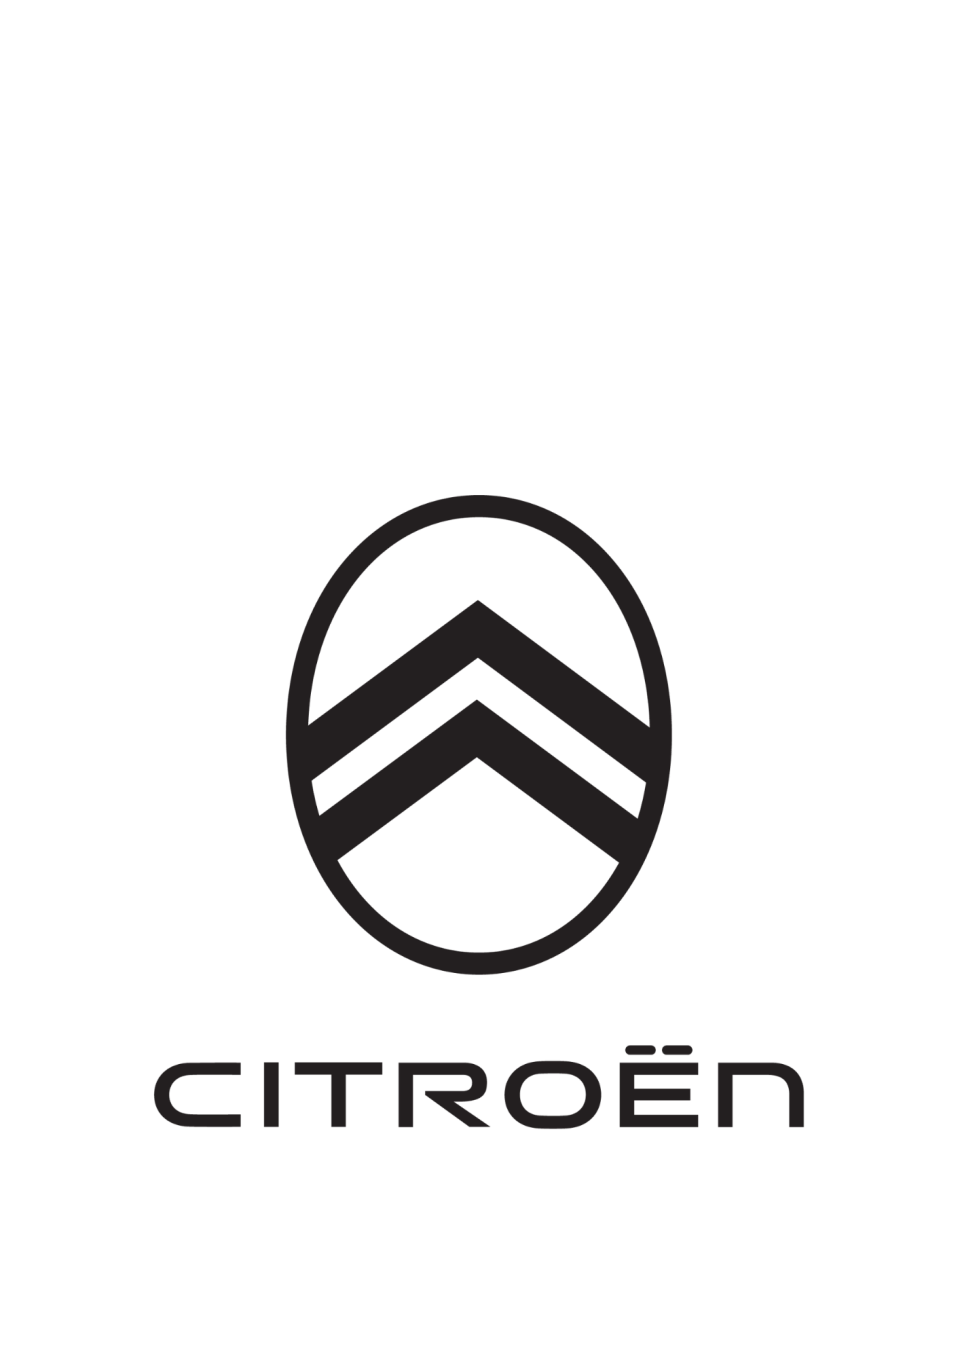 Citroën : déployer la marque aux chevrons dans le monde entier